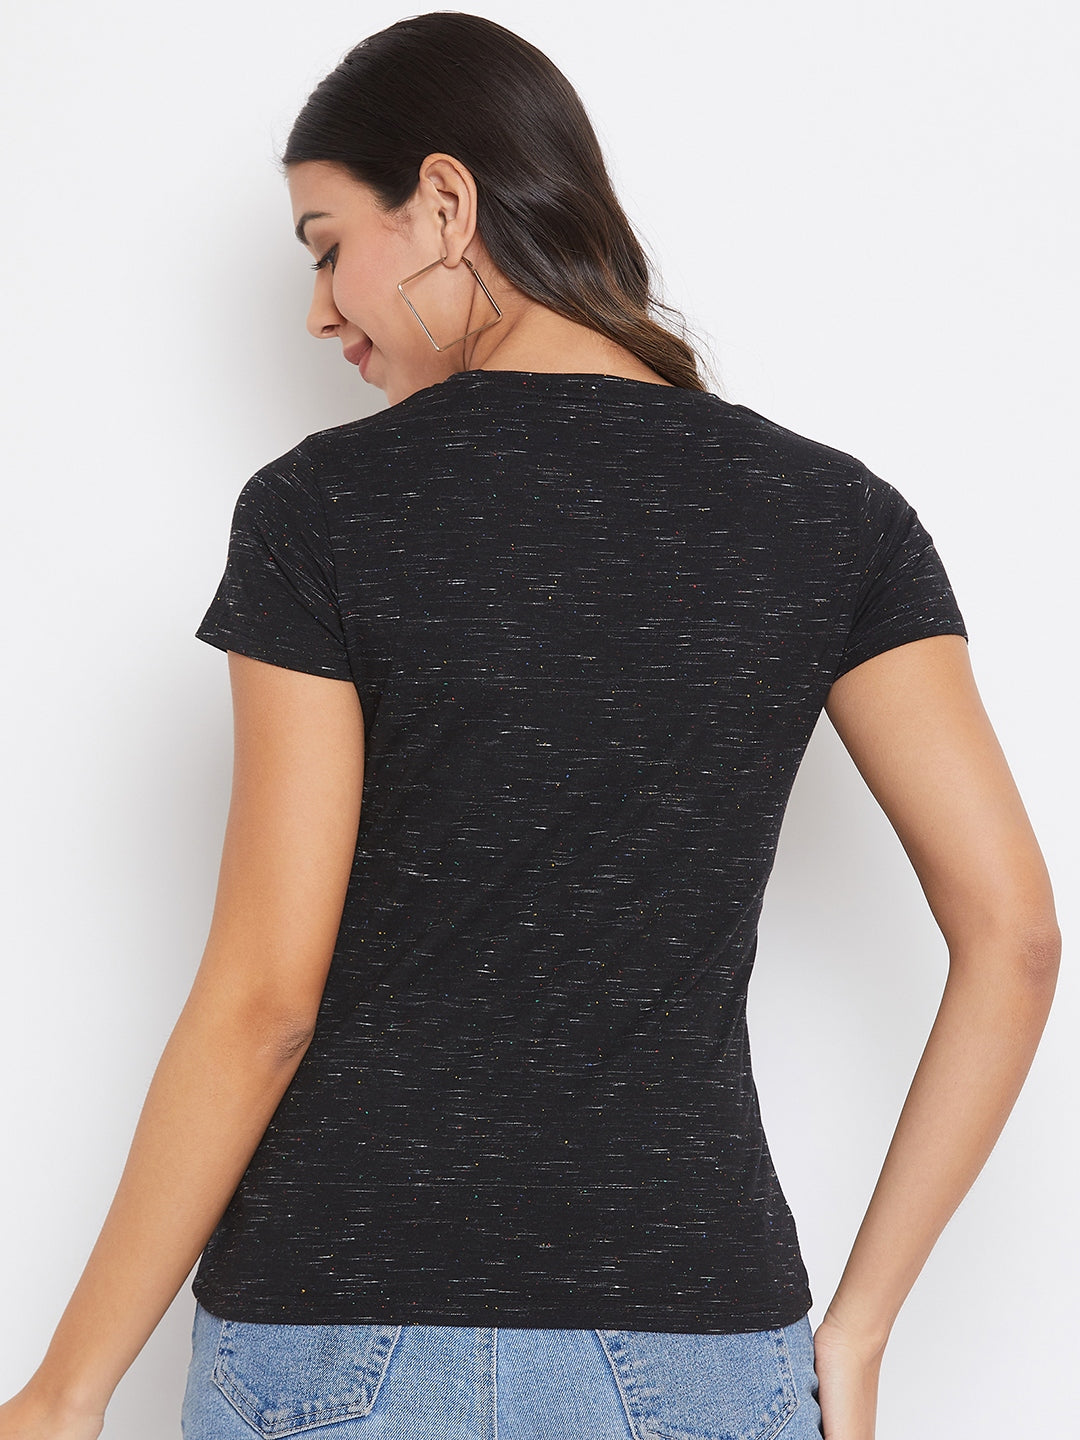 Black Printed T-shirt - Women T-Shirts